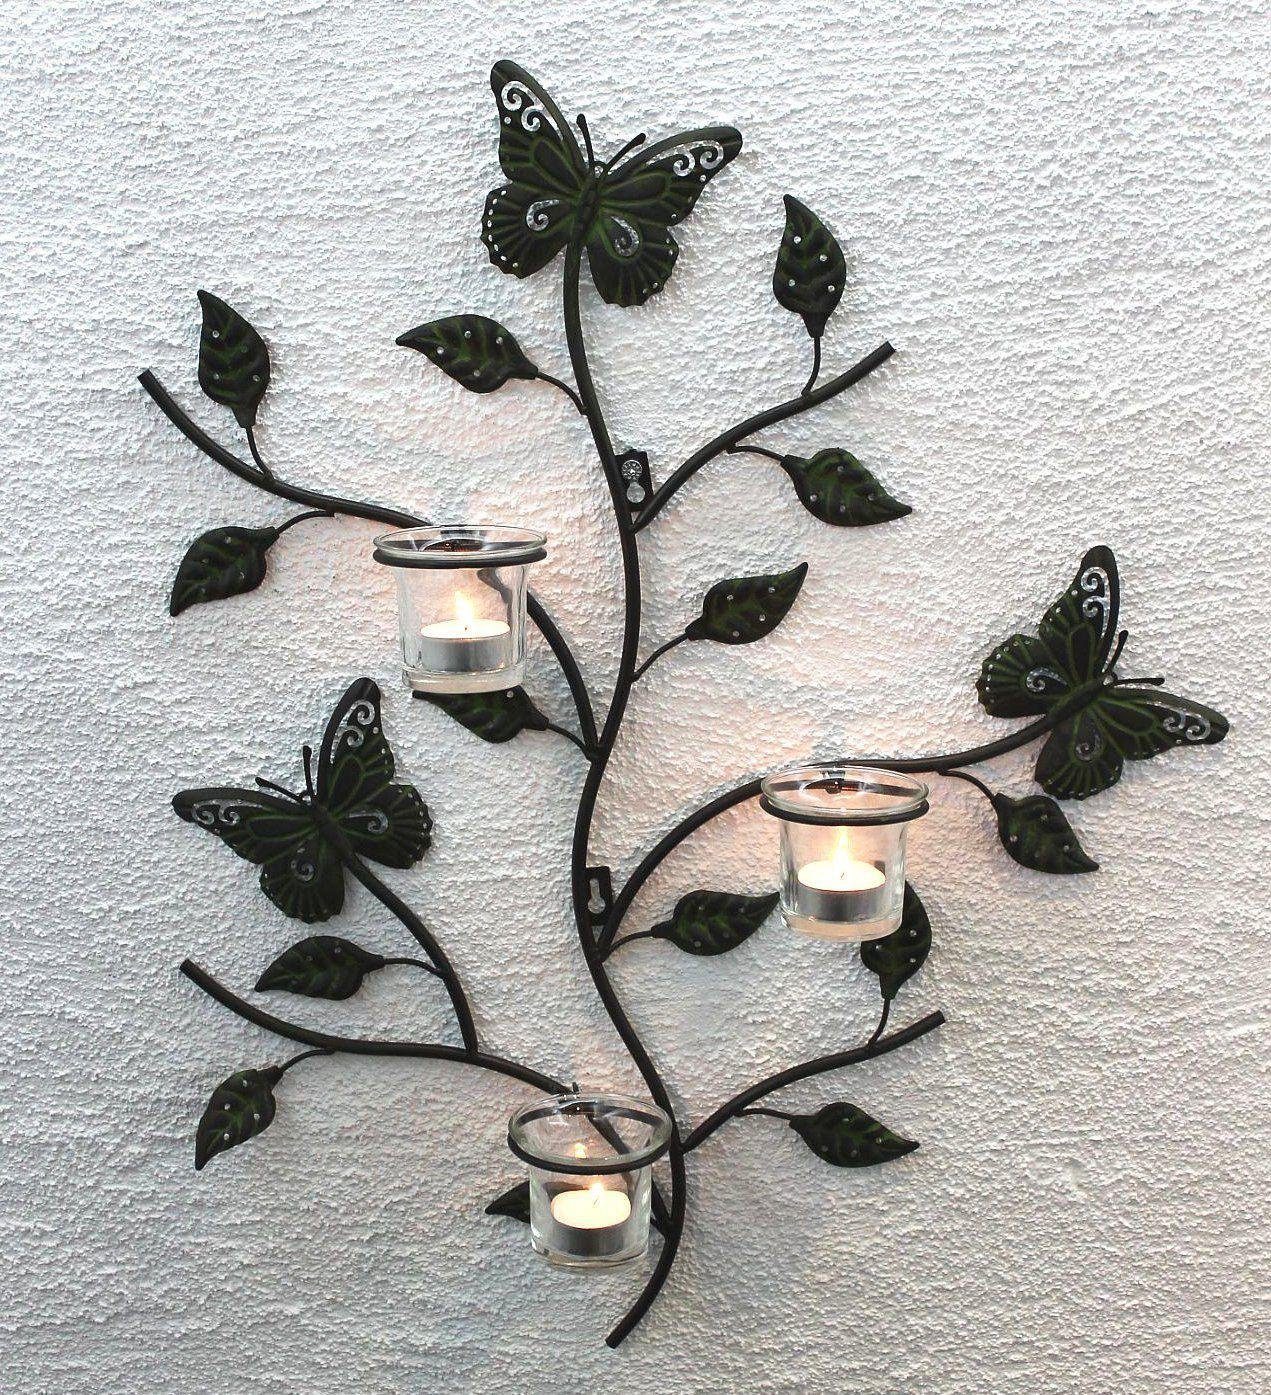 DanDiBo Teelichthalter Wandteelichthalter Metall Kerzenständer Wandkerzenhalter für Teellichter 12120 Teelichthalter 62 cm Wandleuchter Kerzenhalter Wand Teelichtglas